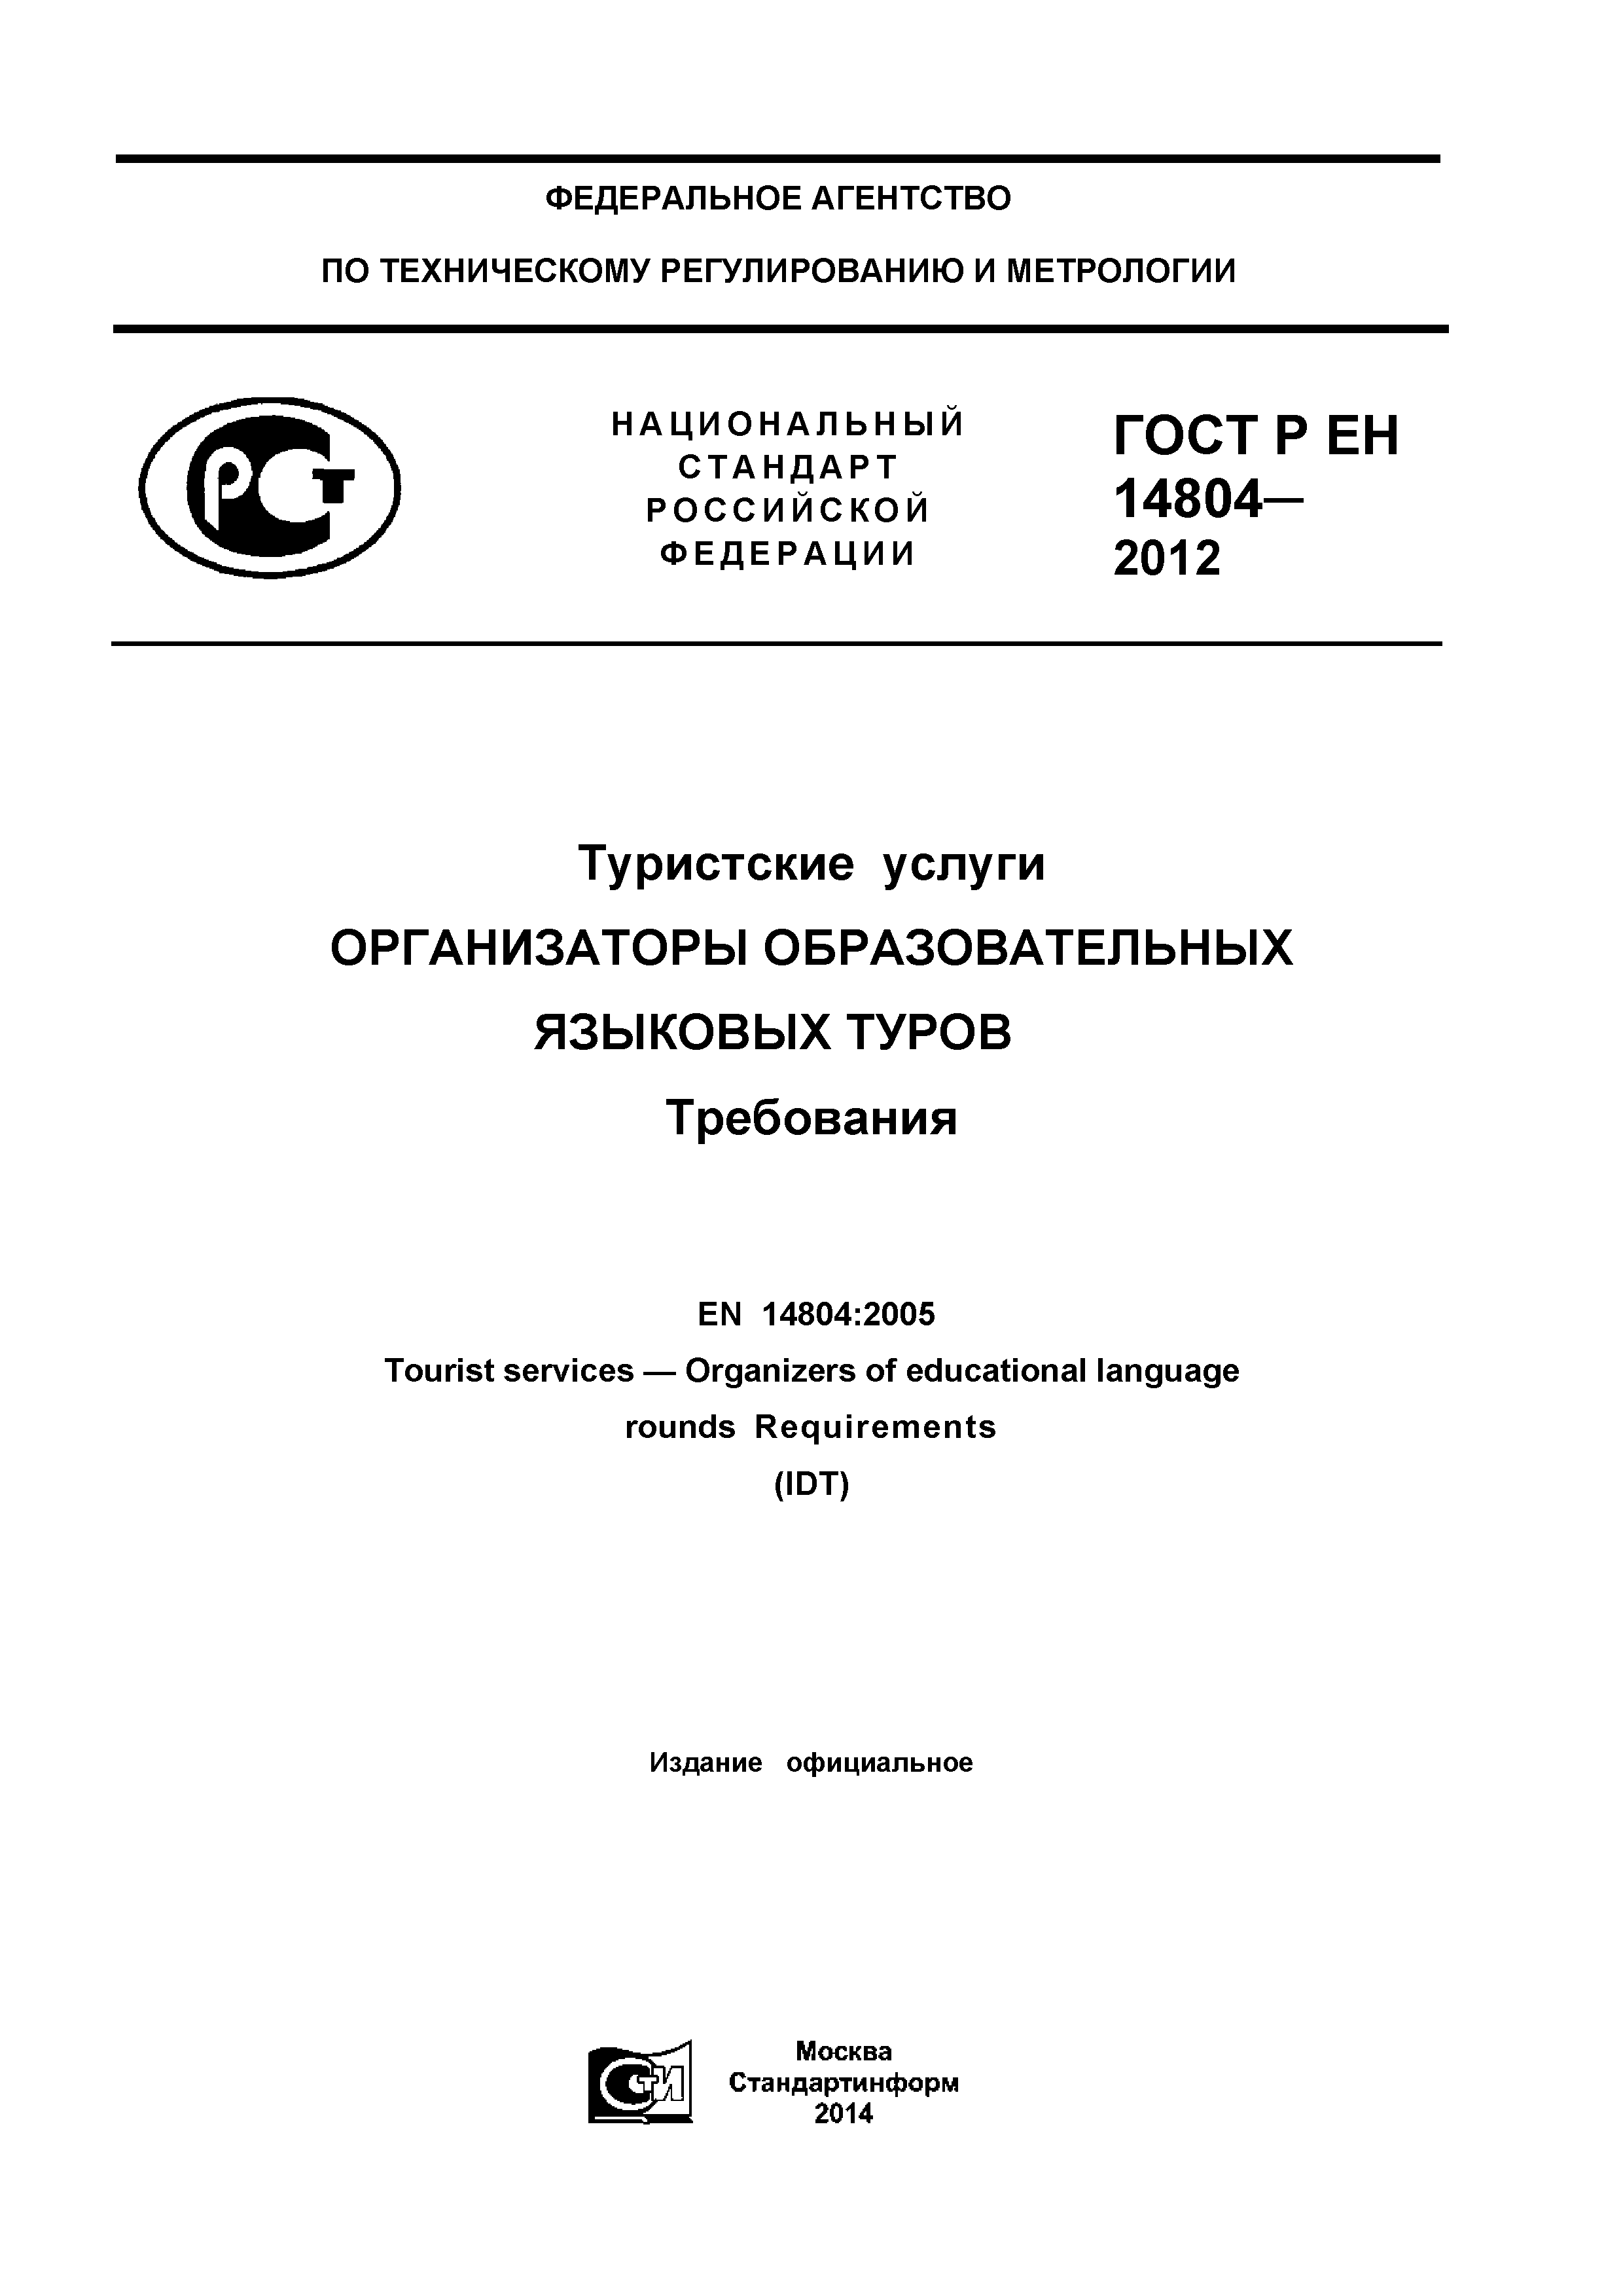 ГОСТ Р ЕН 14804-2012